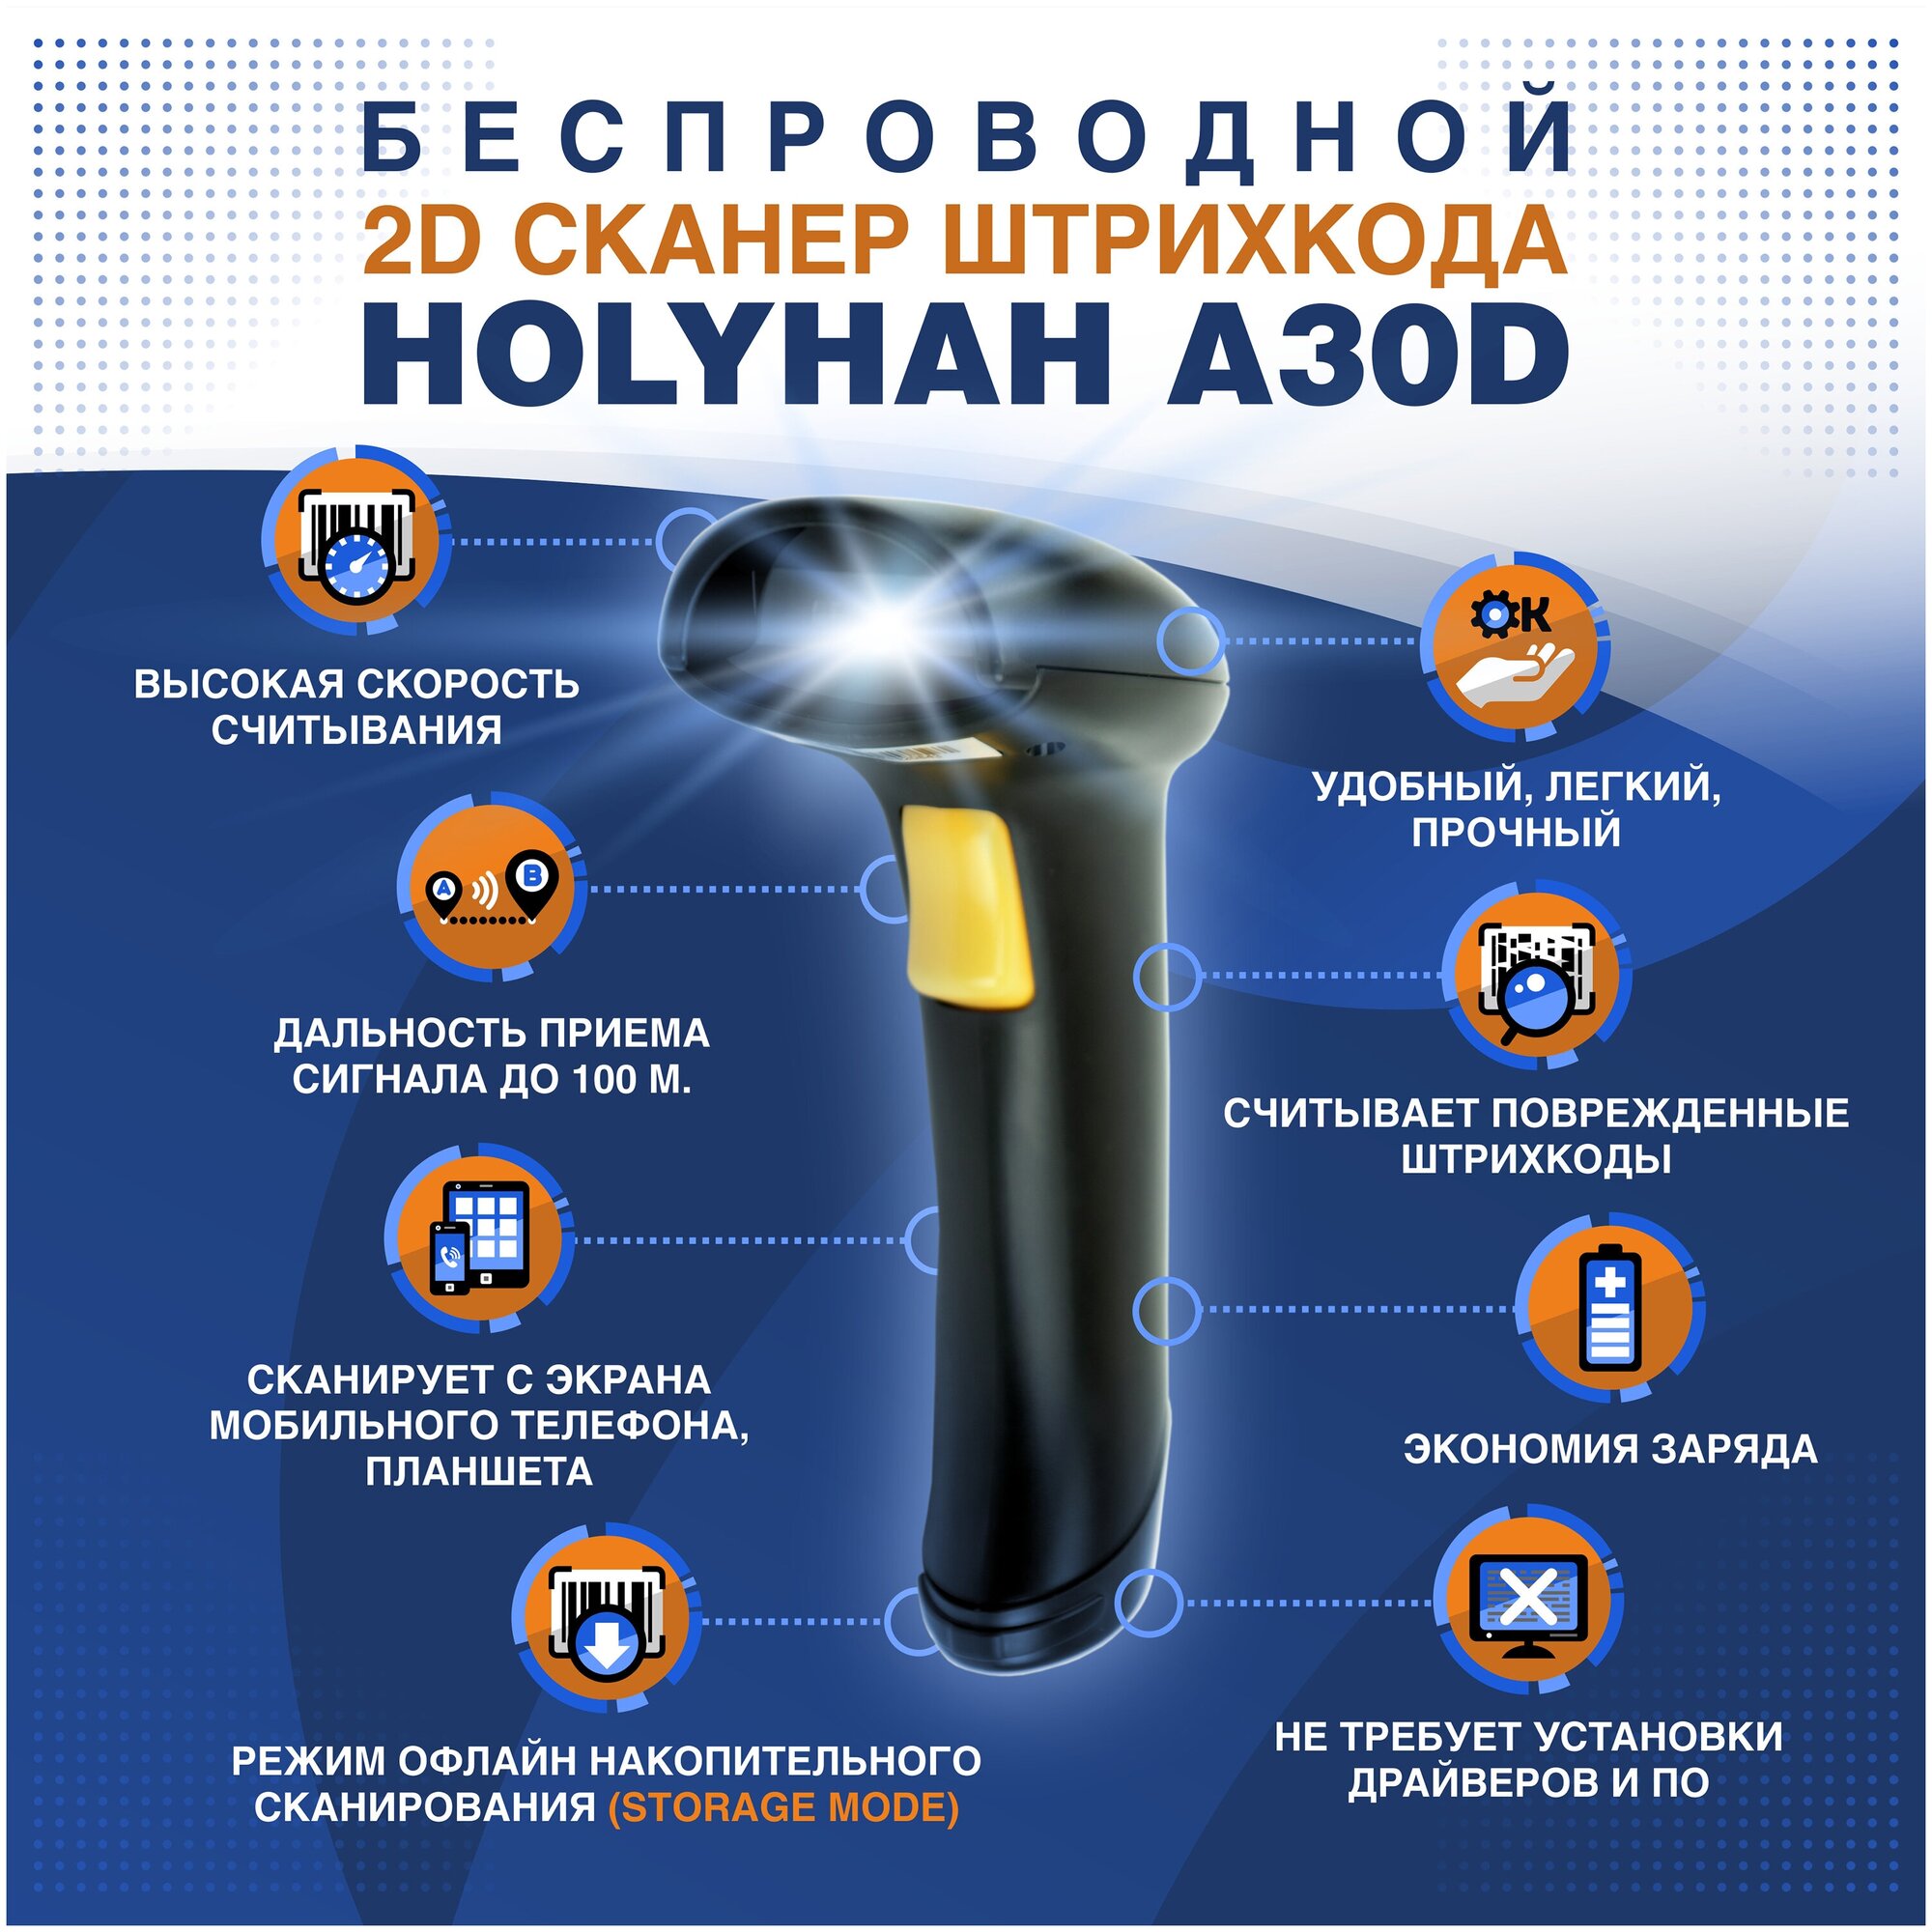 Беспроводной 2D сканер штрих кода Holyhah A30D USB для маркировки, Честный знак, QR, Эвотор, Атол, Меркурий, 1D